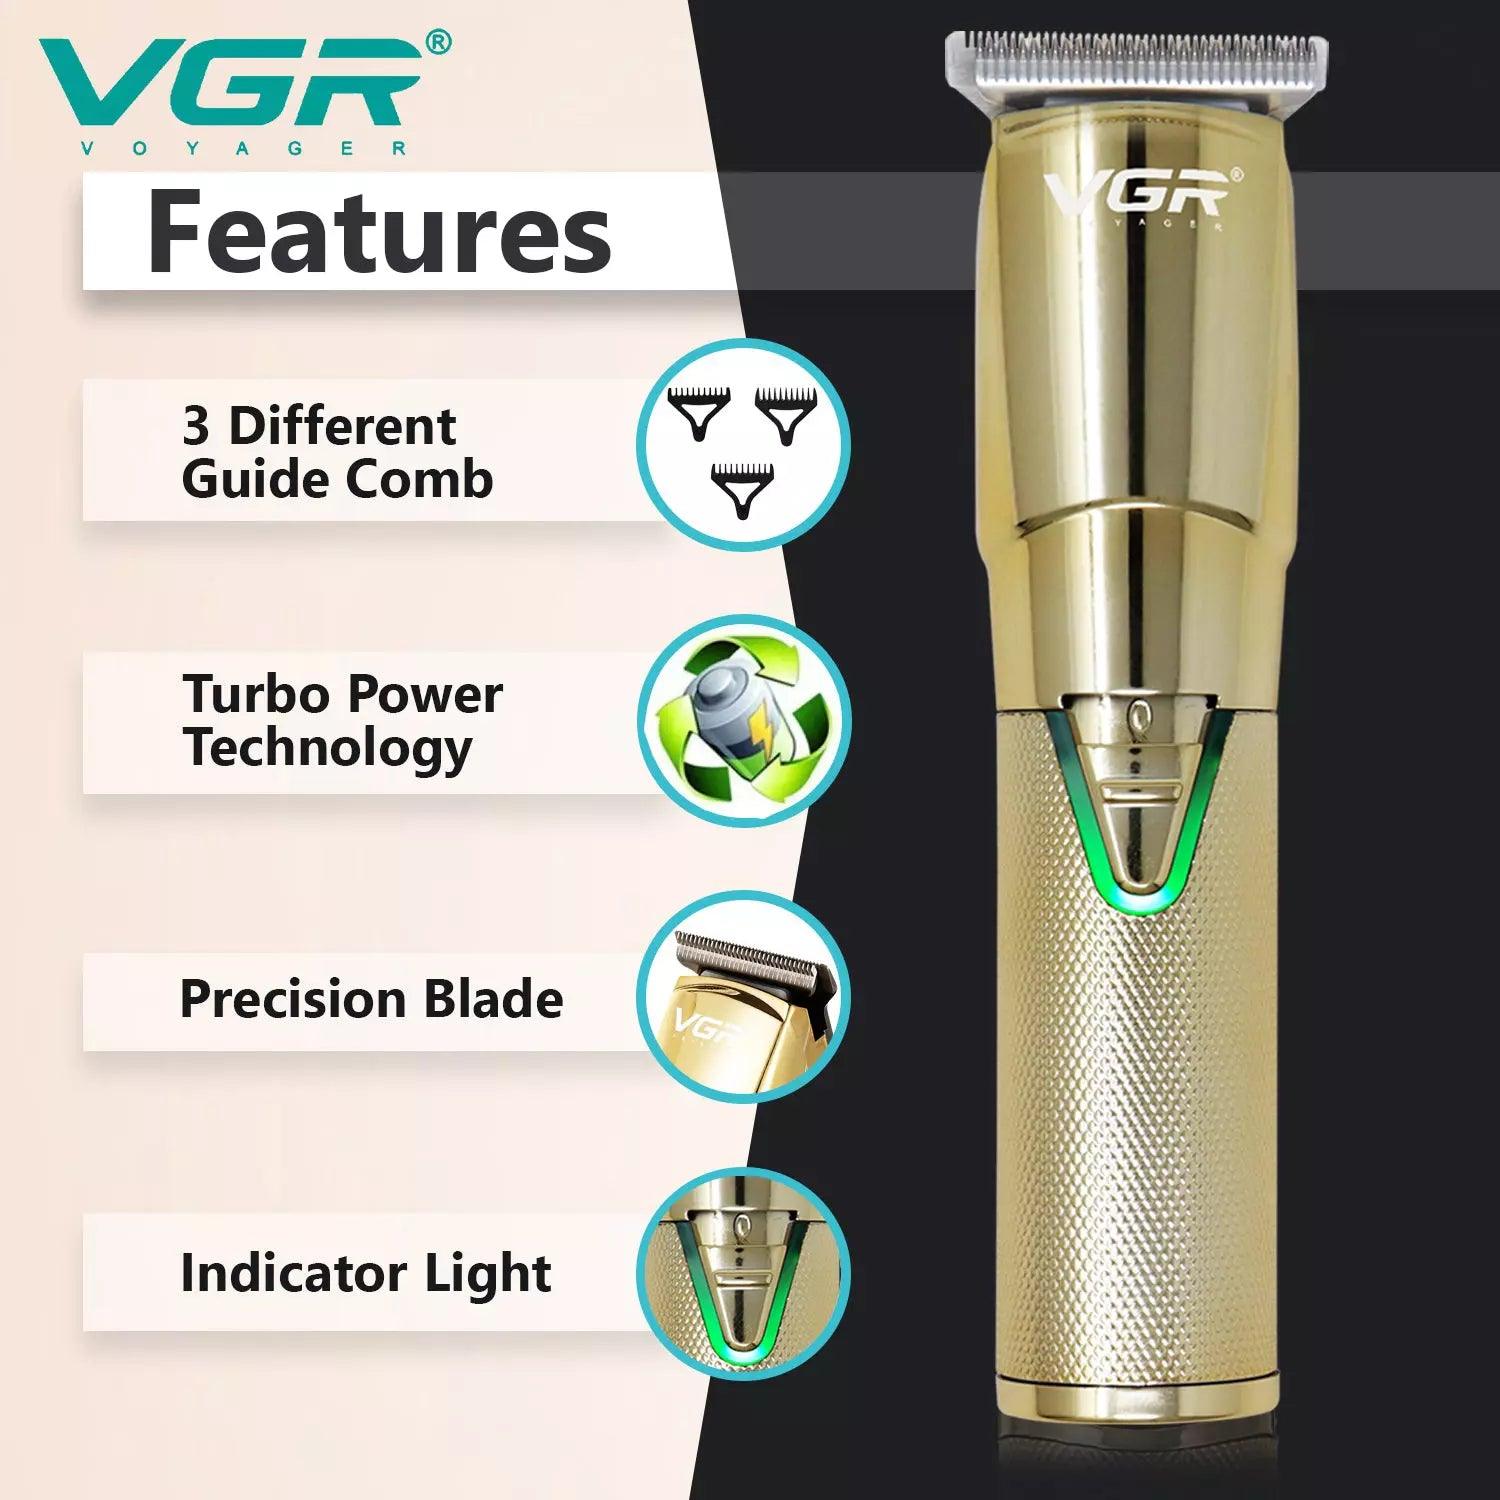 VGR, VGRindia, VGRofficial, VGR V-903